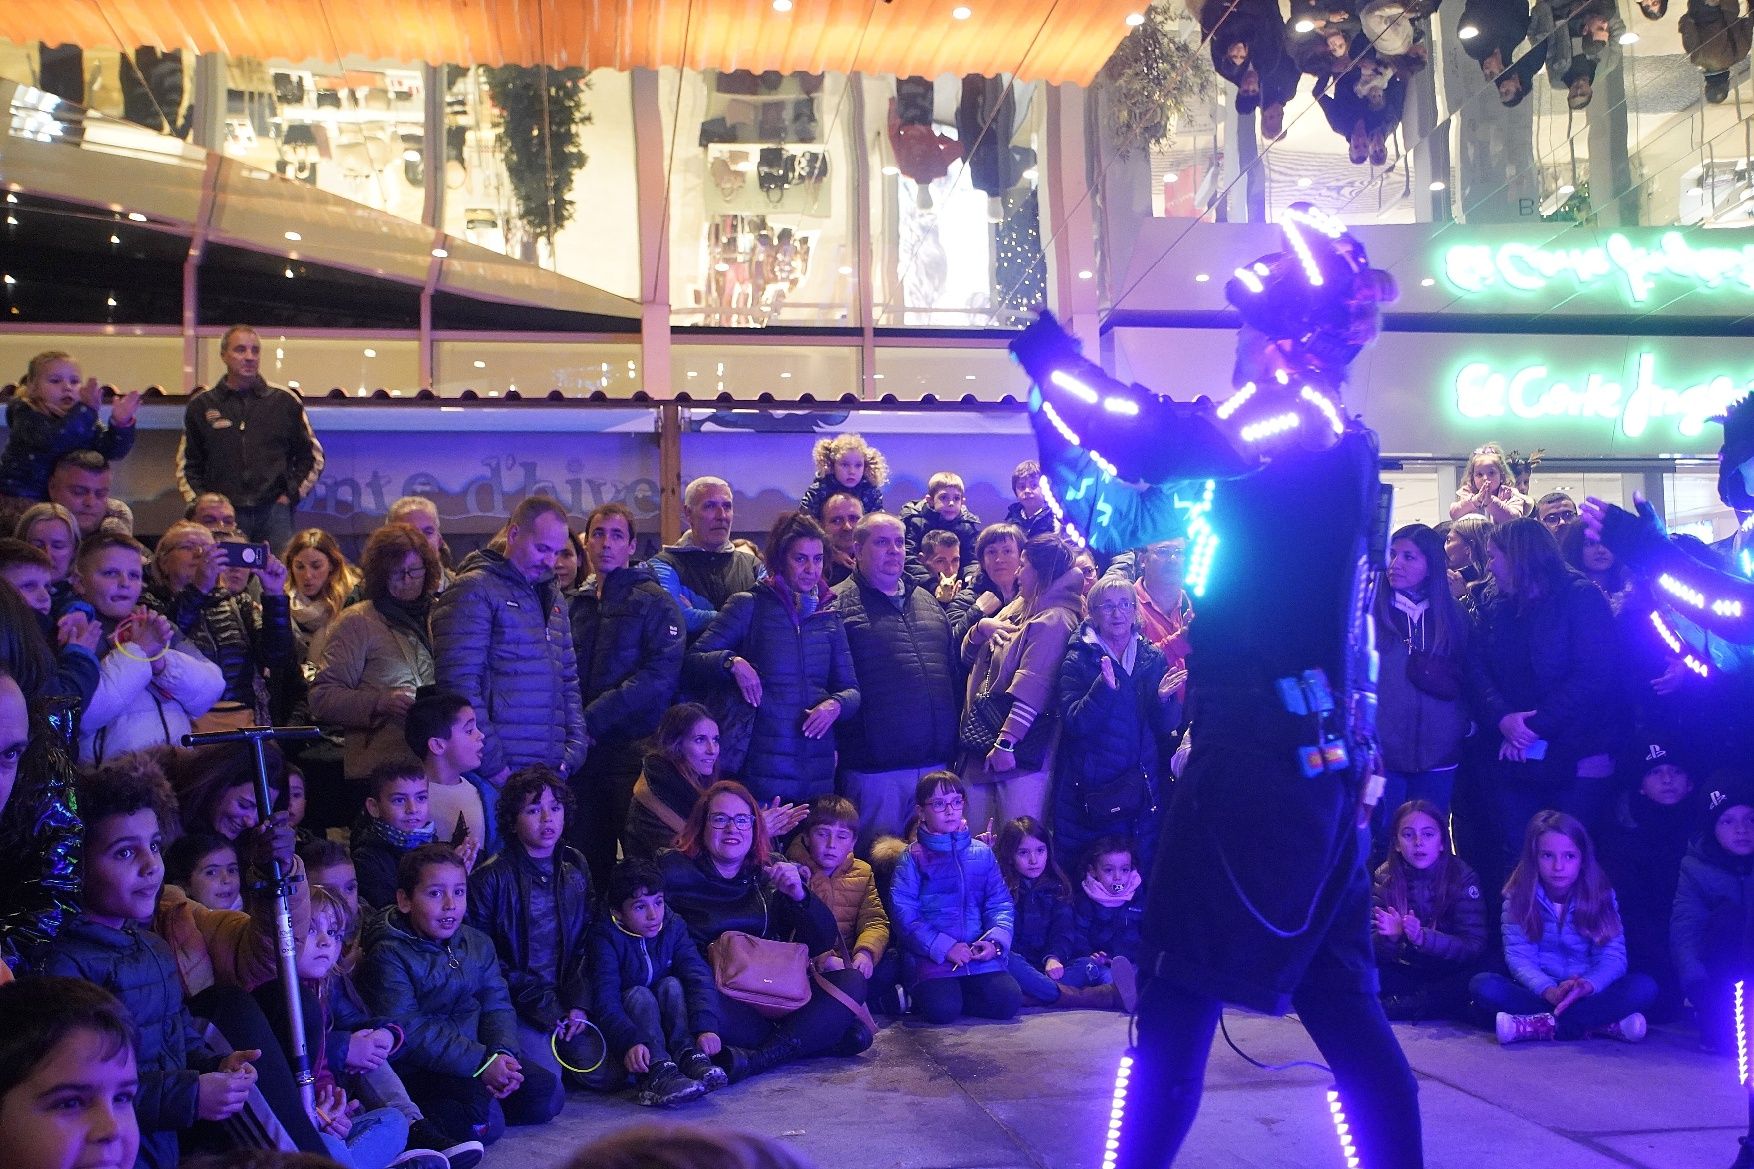 Les imatges de l'obertura de les llums de Nadal al Corte Inglés de Girona